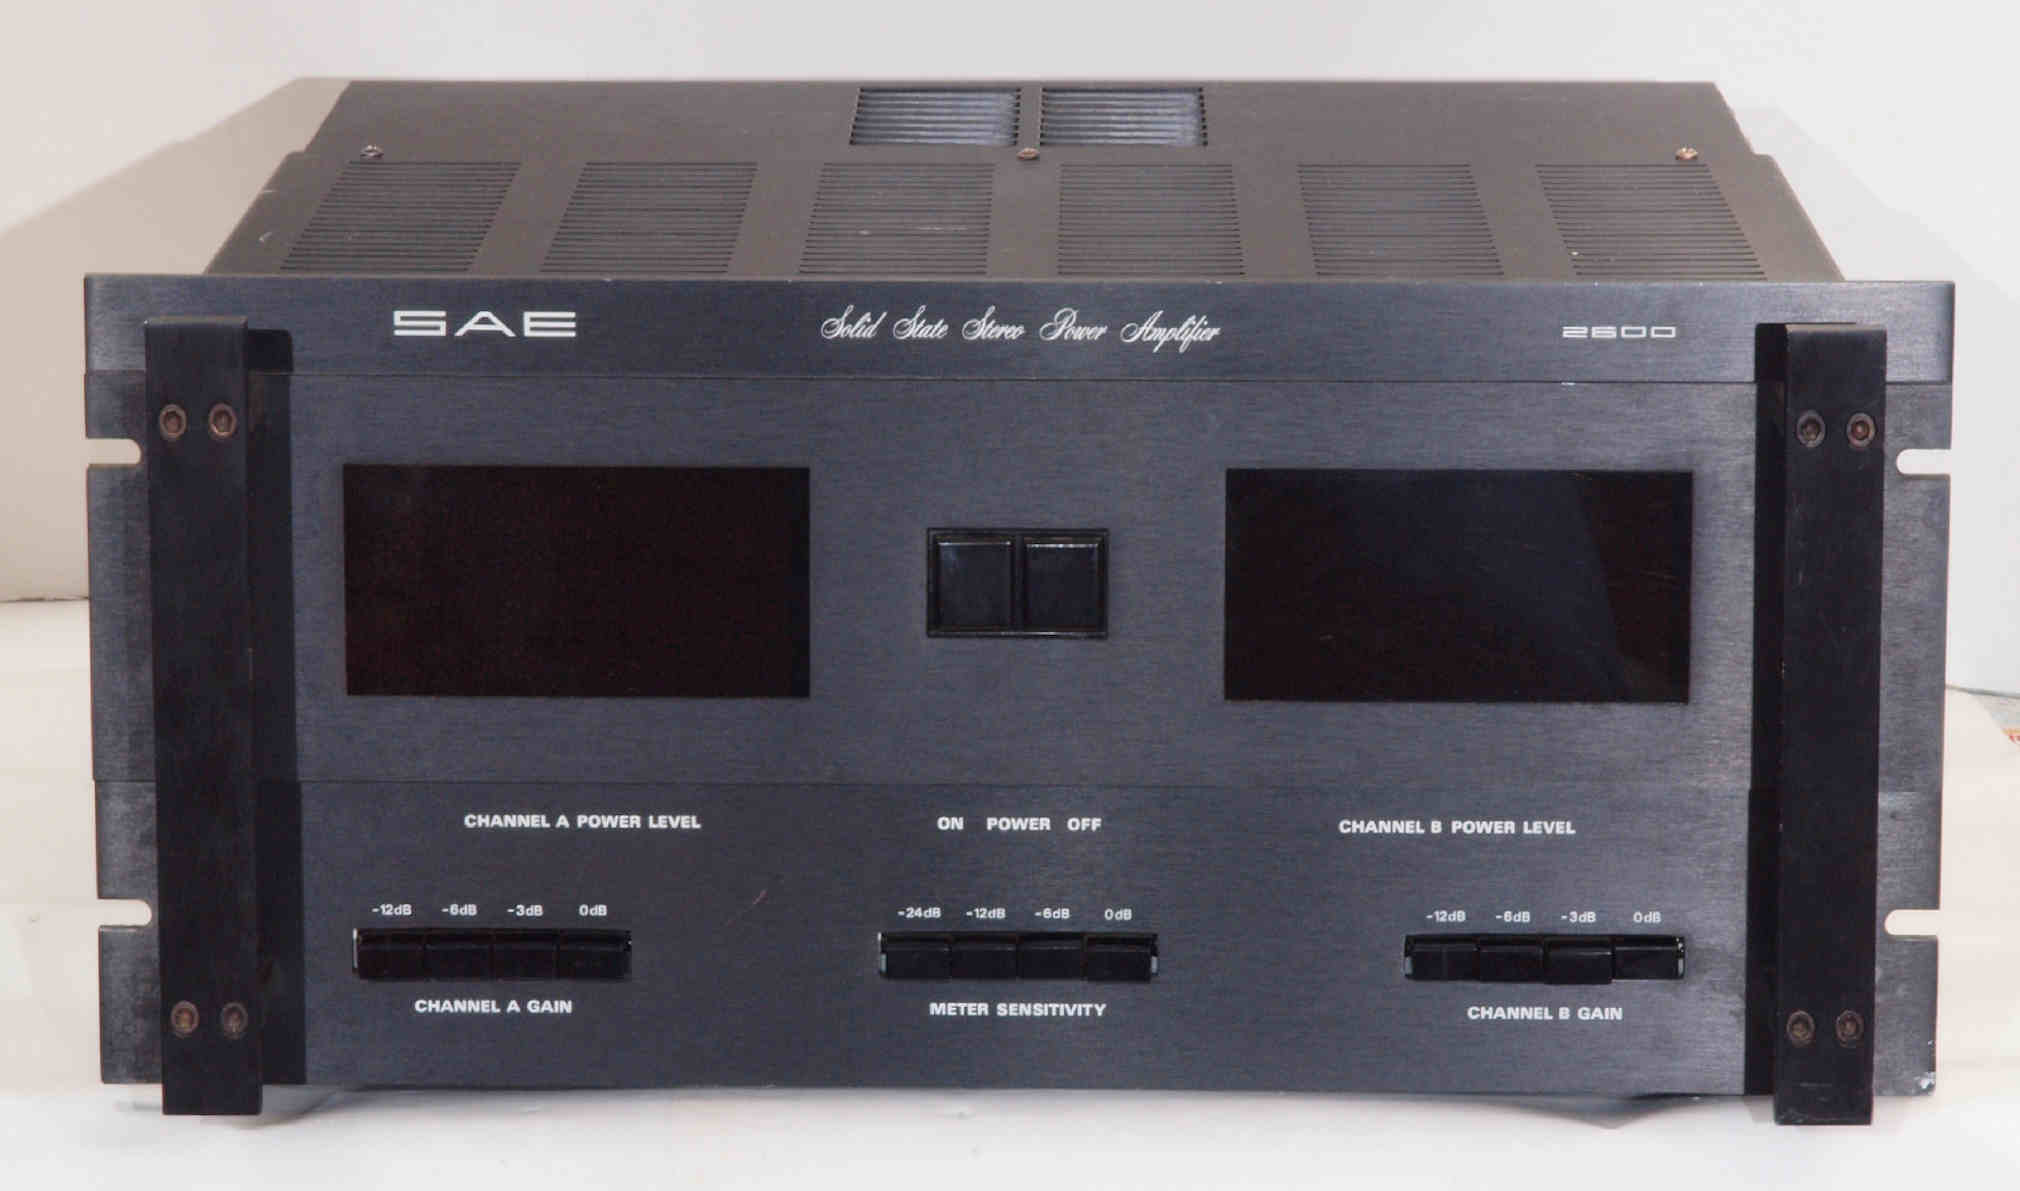 Scientific Audio Electronics mark 2600 後期型